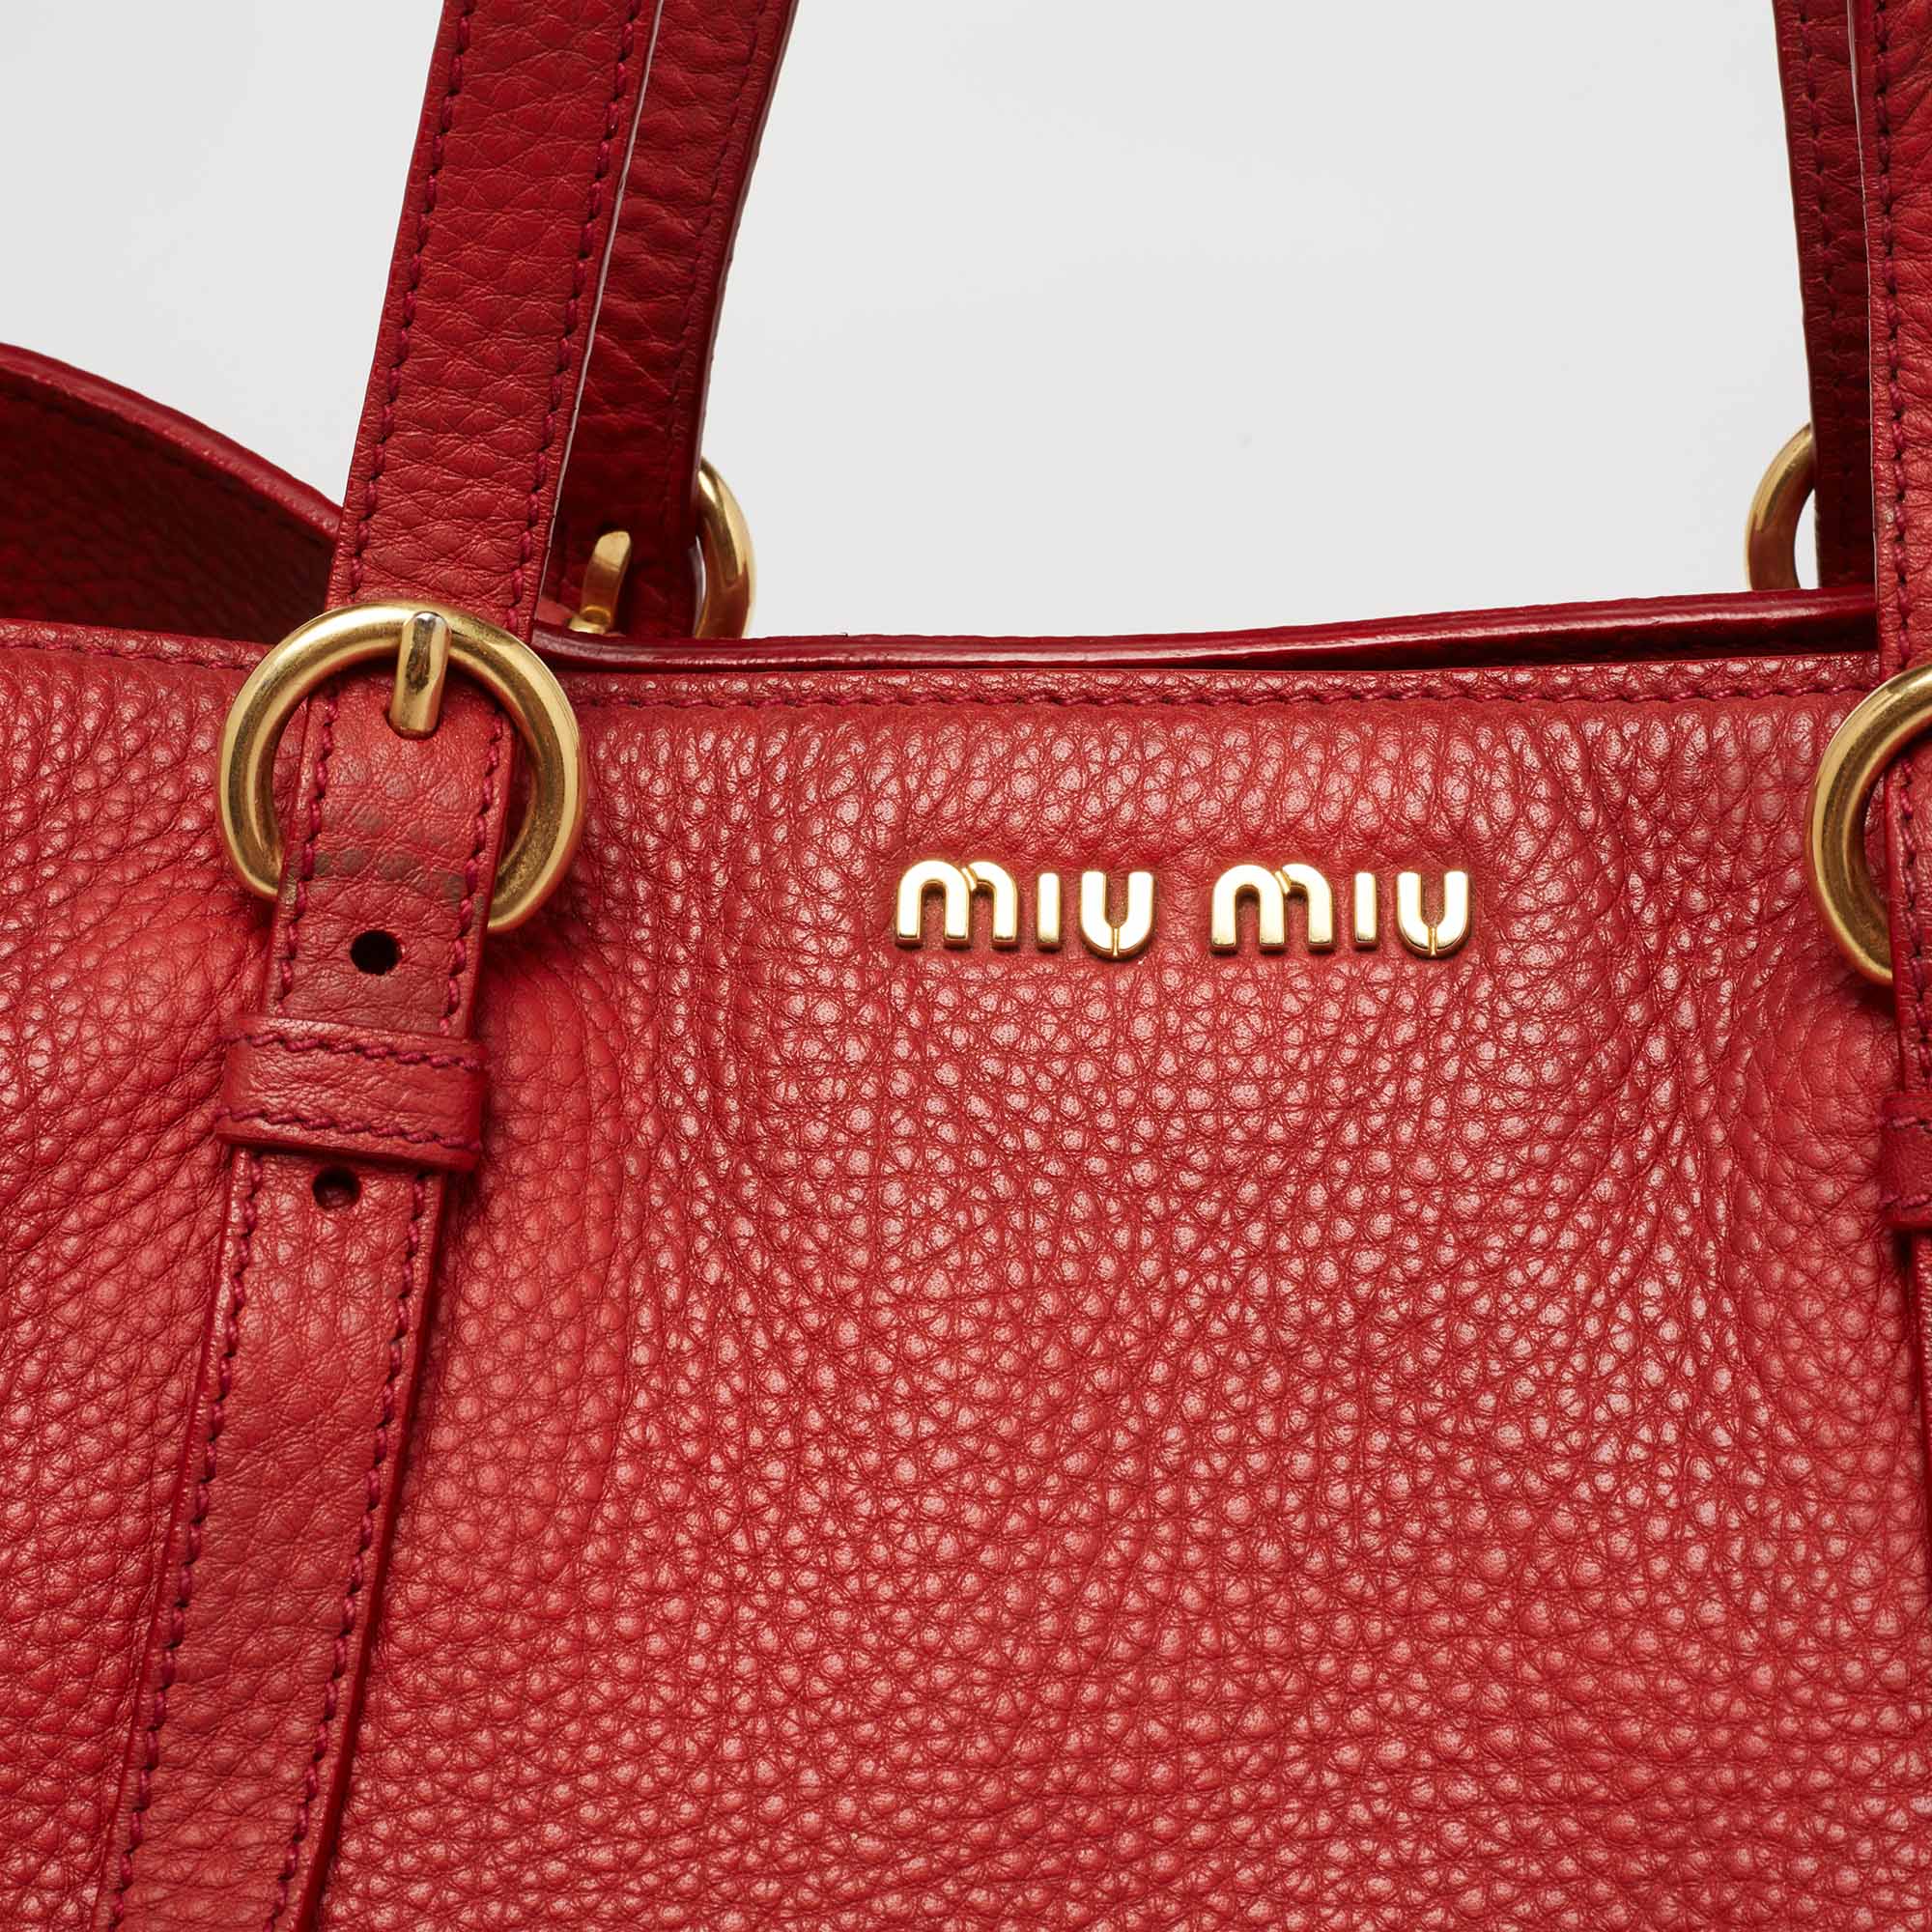 Miu Miu Red Leather Shopper Tote